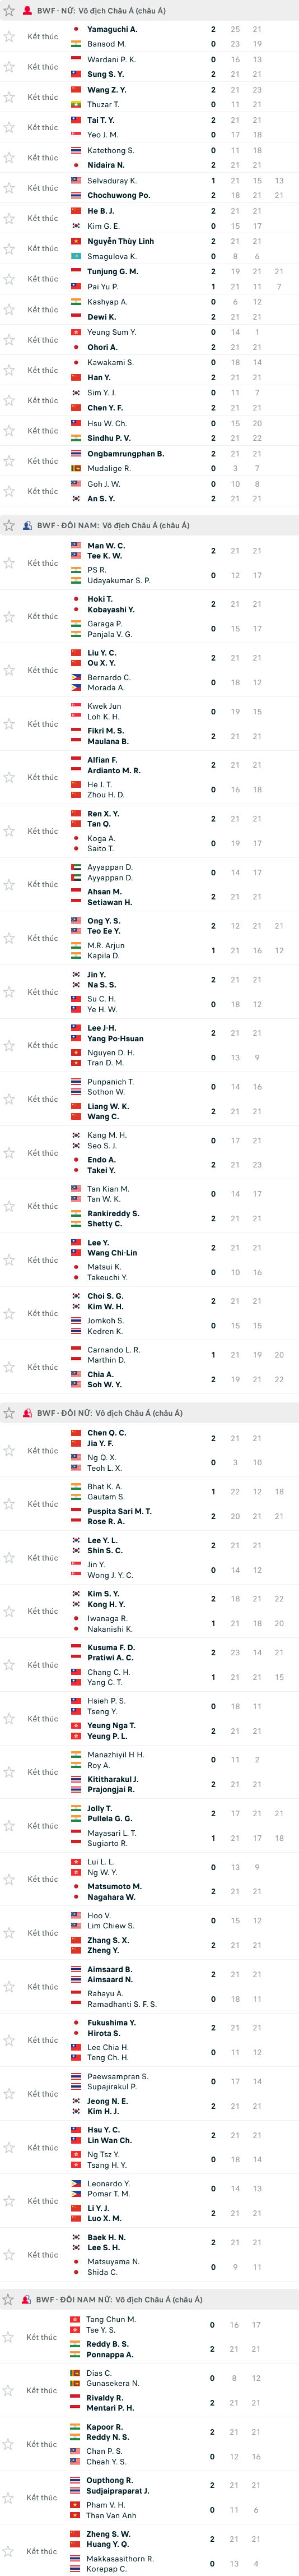 Kết quả giải cầu lông Vô địch châu Á ngày 26/4: Hạt giống số 1 bị loại - Ảnh 3